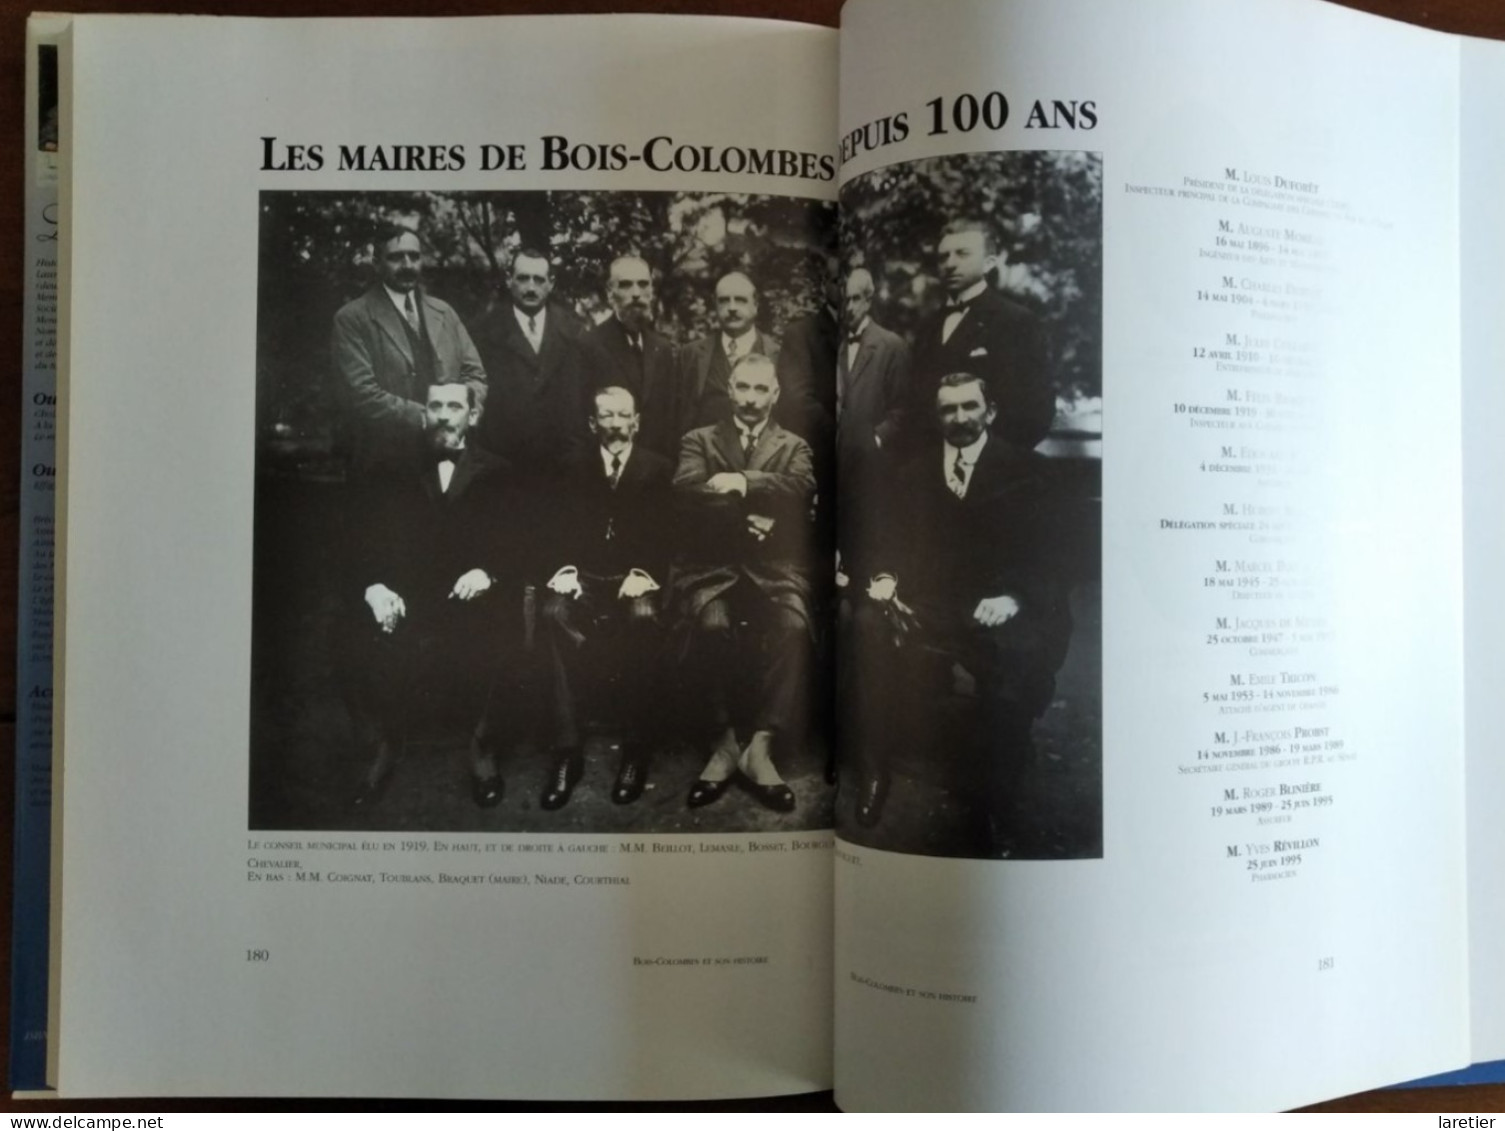 Bois-Colombes et son Histoire - Lucienne Jouan, Lauréate de l'Académie française - Hauts-de-Seine (92)